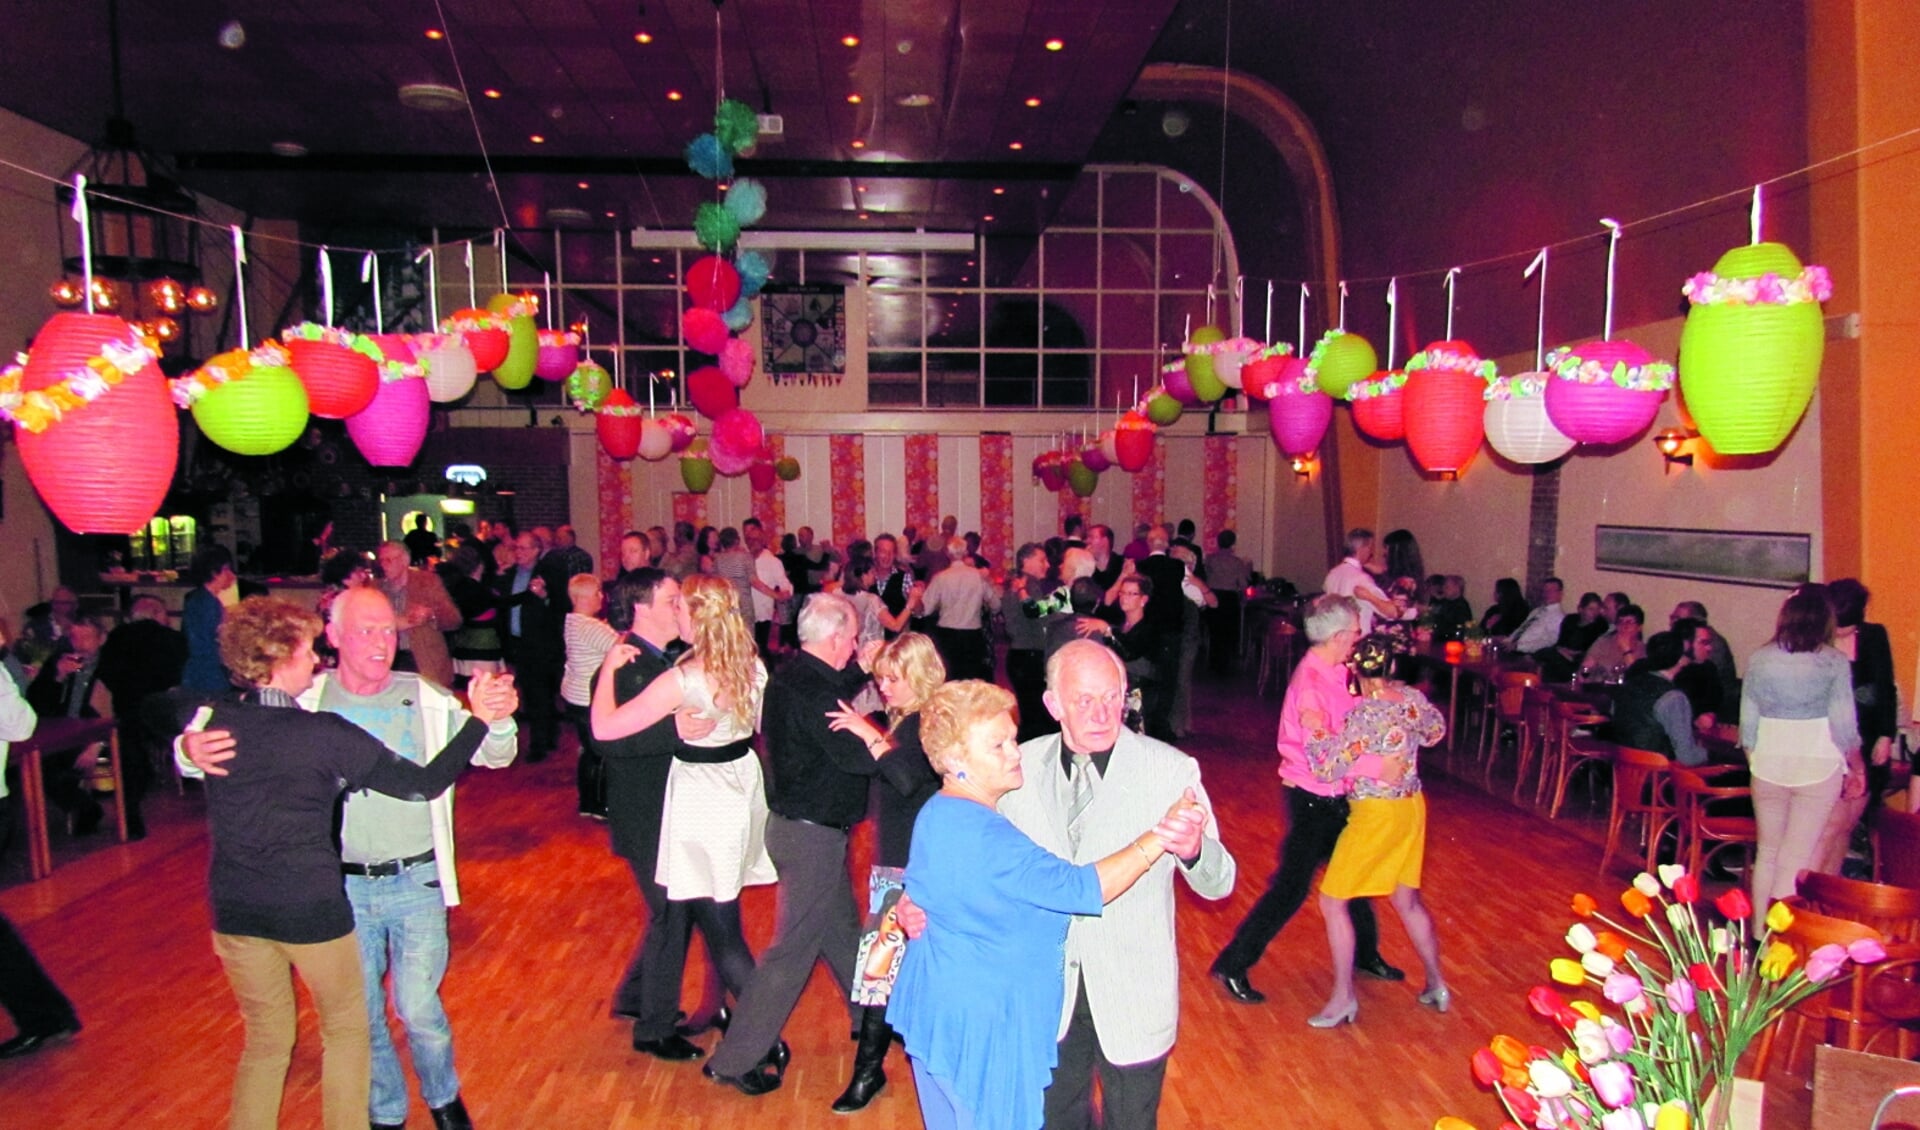 Op 7 december weer ouderwets dansen in Heemskerk voor oudere echtparen. 